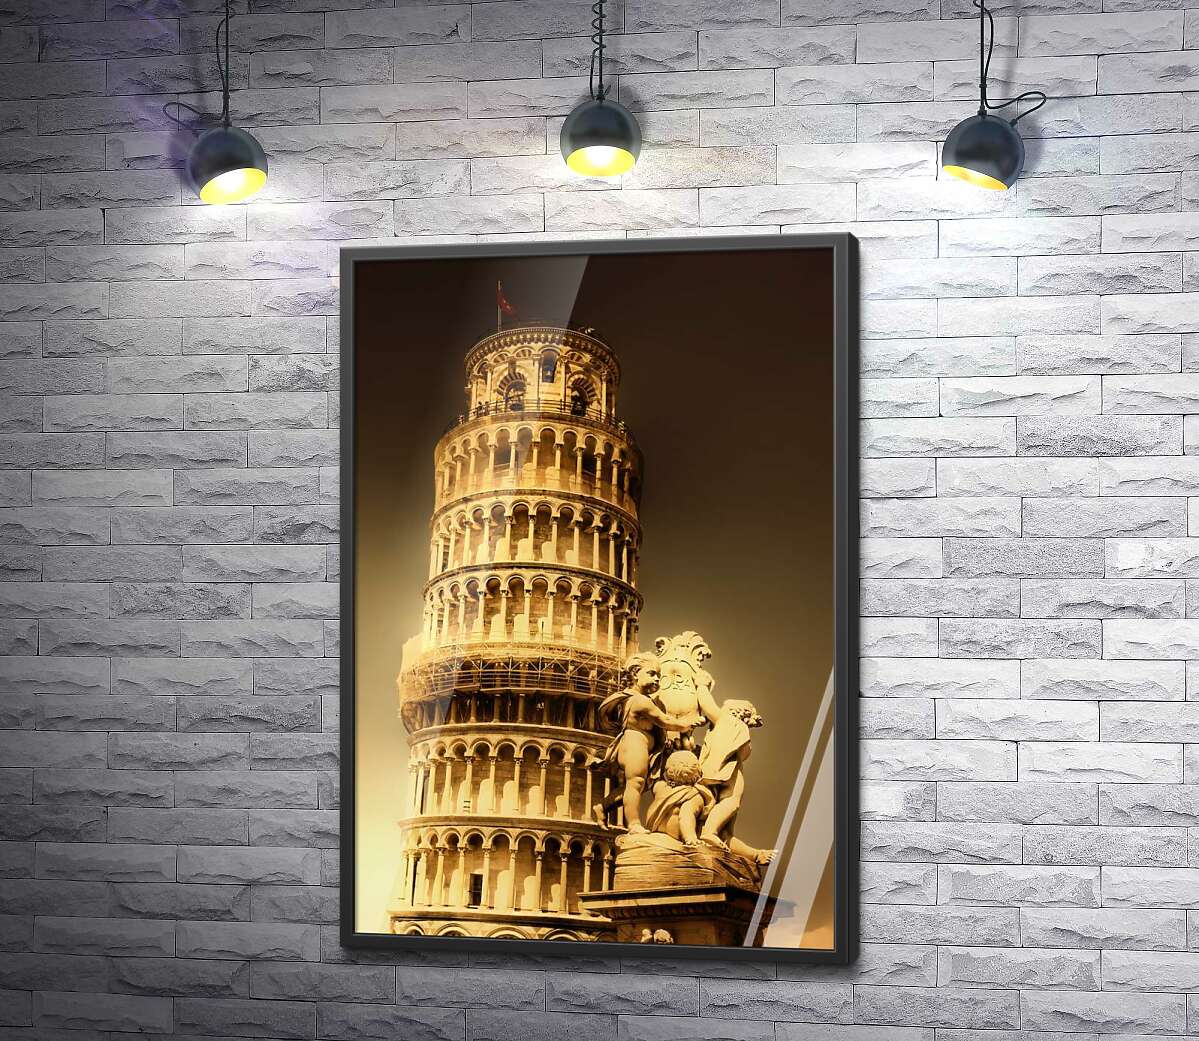 постер Пізанська вежа (Pisa tower) видніється через фонтан Путті (Fontana dei Putti)